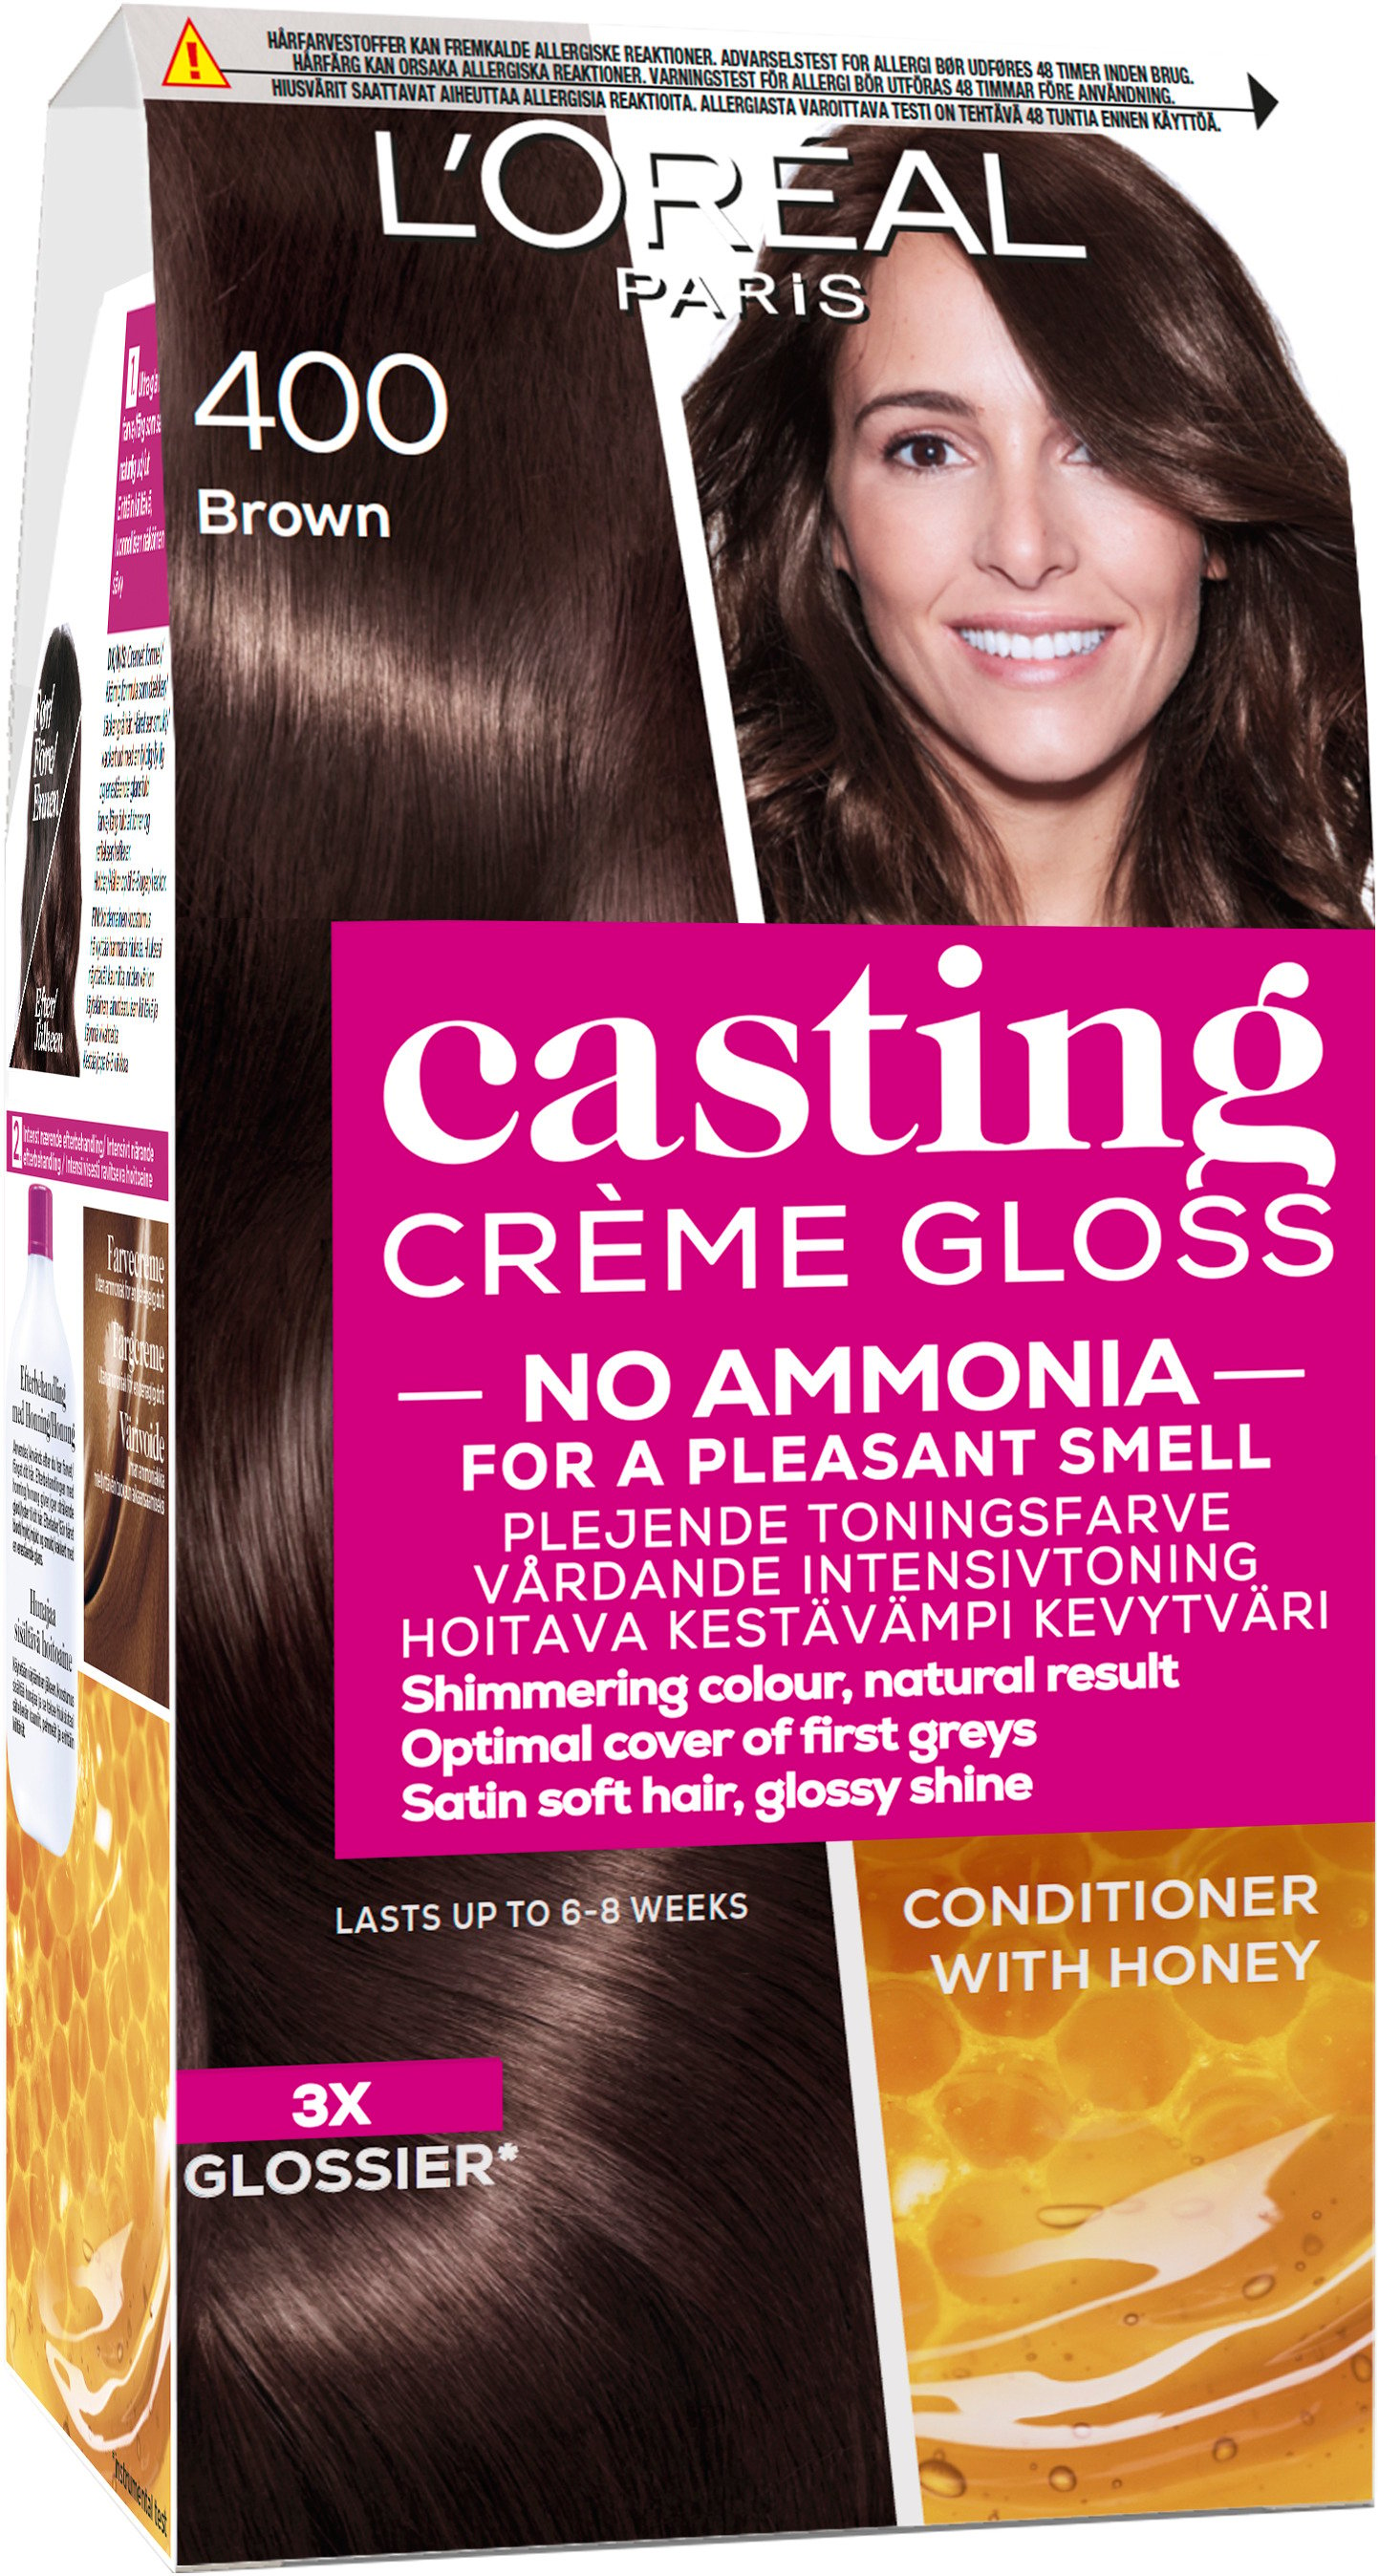 L'Oréal Paris Casting Creme Gloss 400 Brown